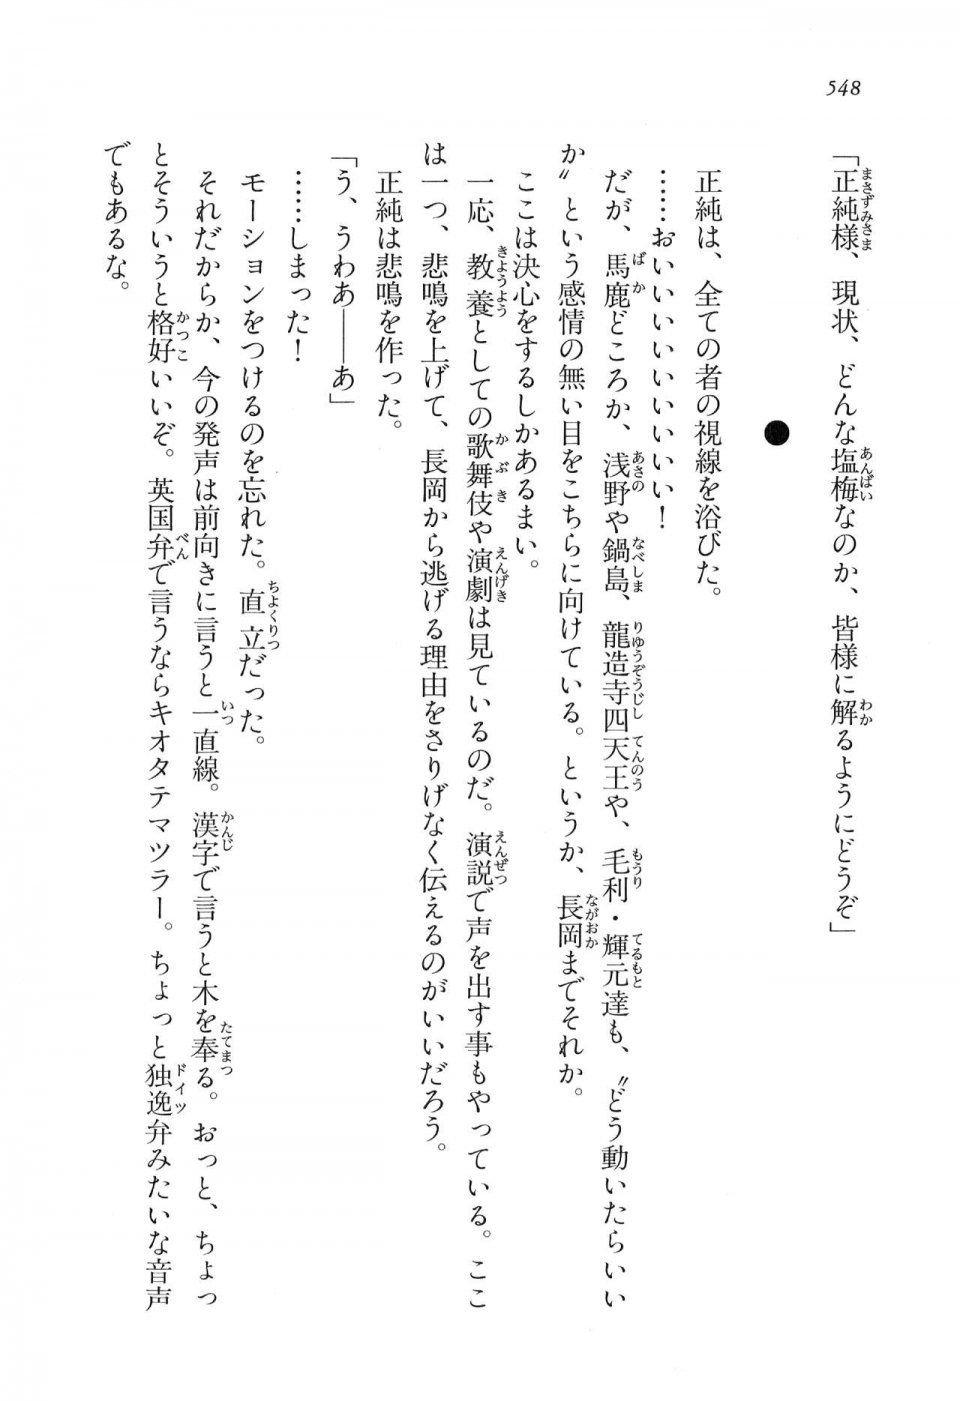 Kyoukai Senjou no Horizon LN Vol 16(7A) - Photo #548